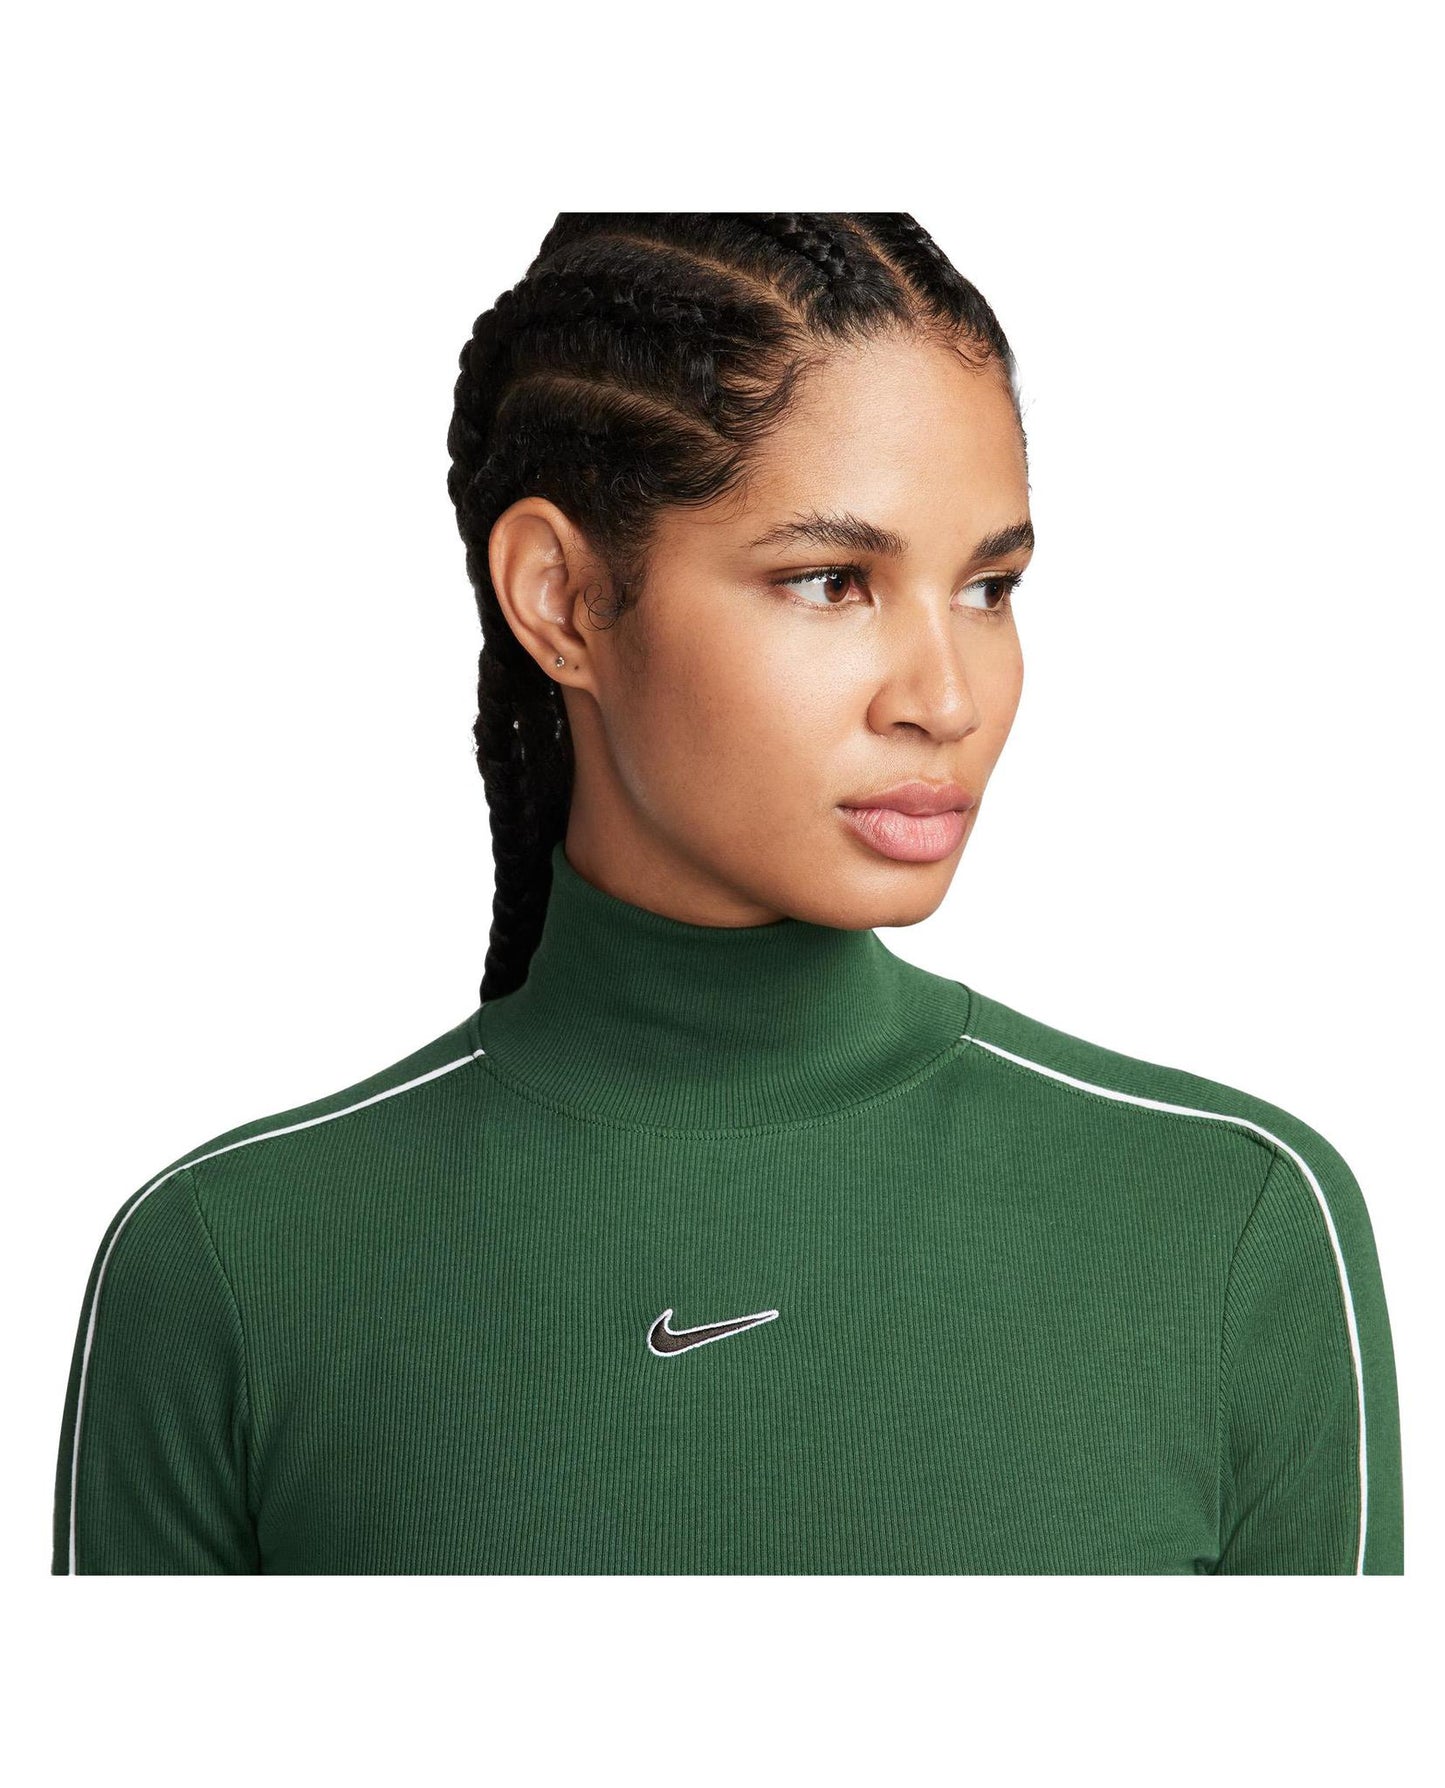 Nike WOMEN NIKE LONG SLEEVE TOP - Green